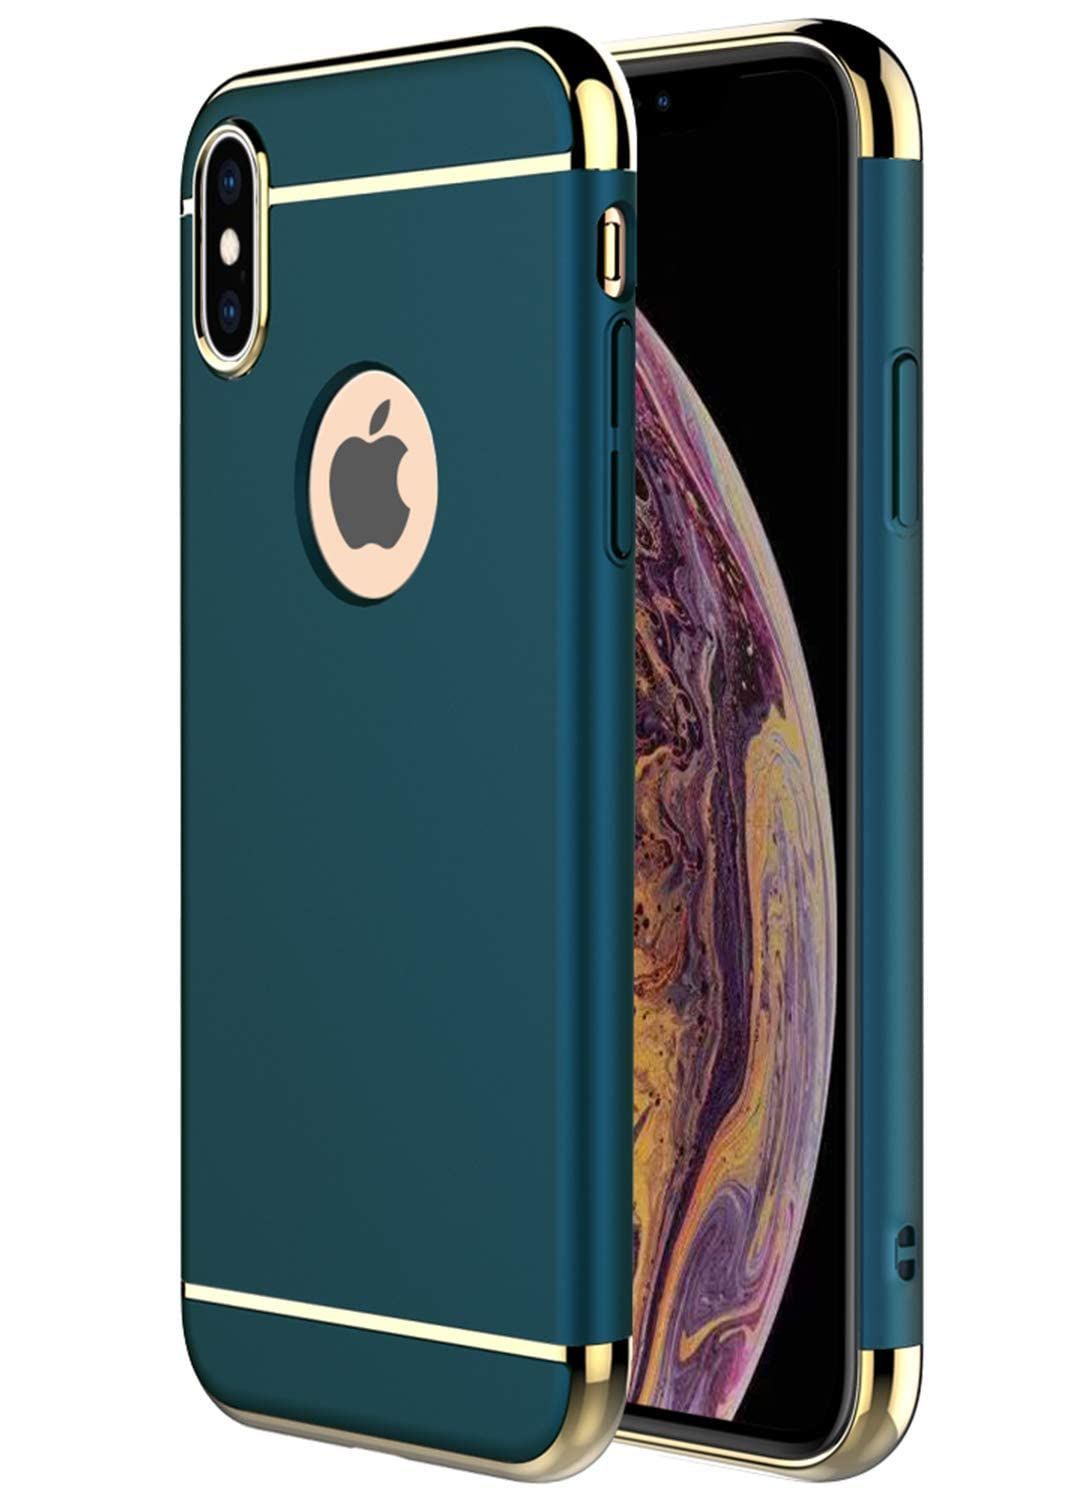 【数量限定】JMSQYU iPhone XS Max ケース, 3 in 1ウルトラスリムハードケース、Apple iPhone XS Max  用エレクトロプレートフレーム付き滑り止め保護ケース-Green